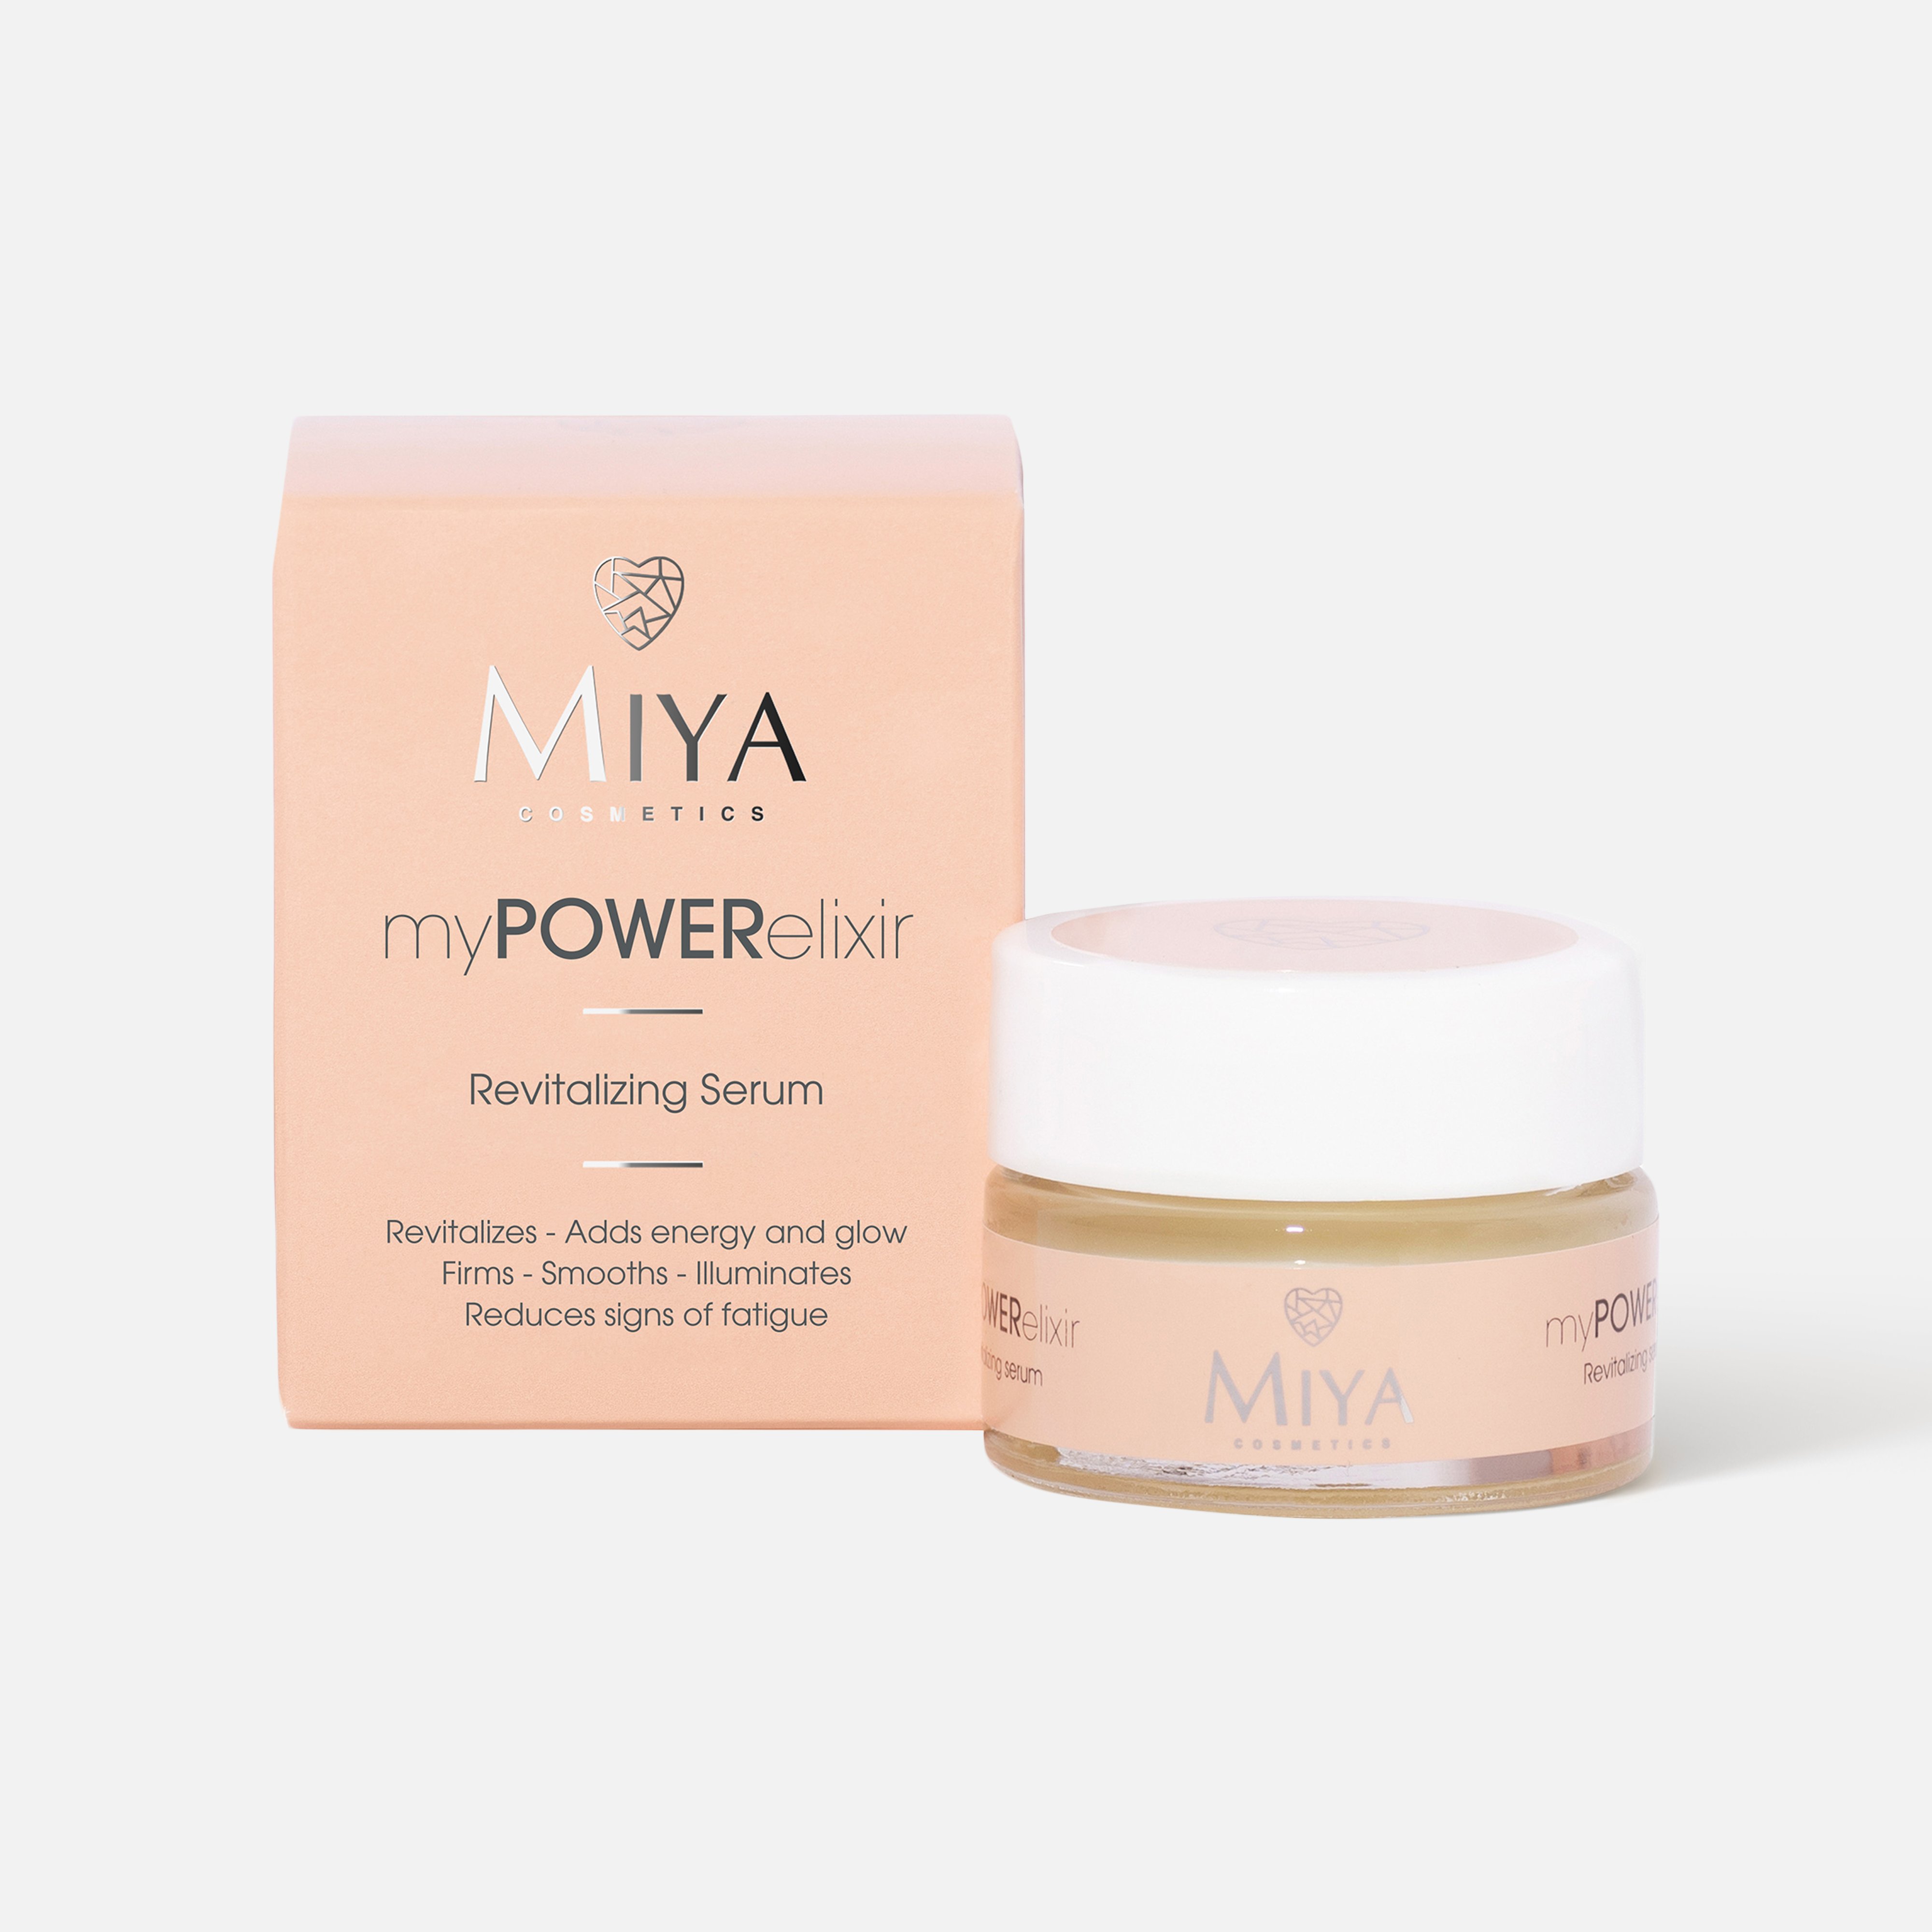 Сыворотка для лица Miya cosmetics myPOWERelixir восстанавливающая, 15 мл